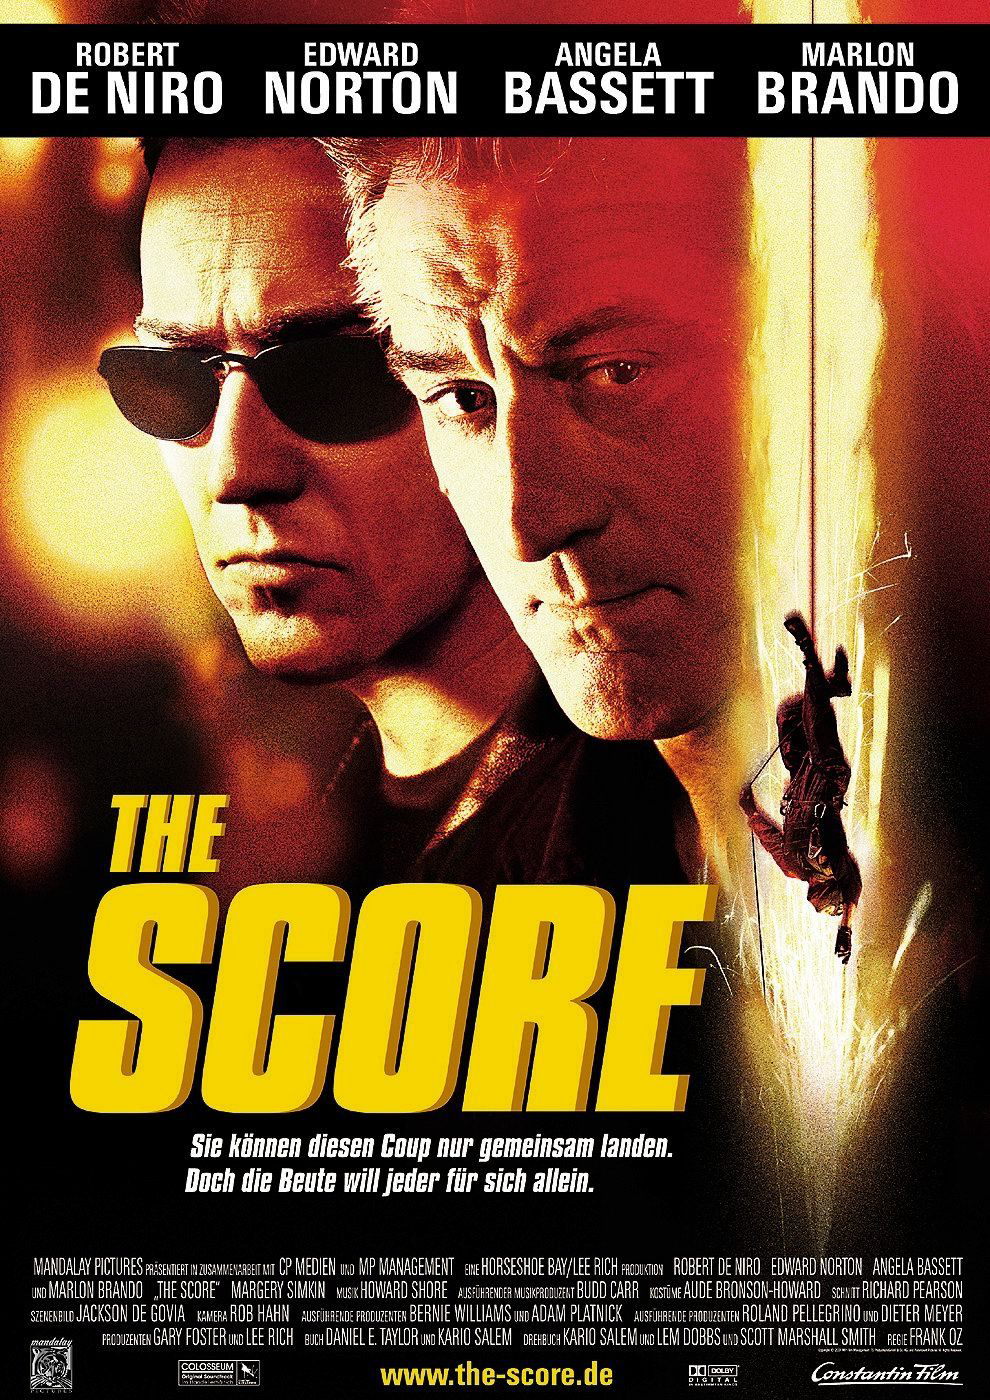 Siêu Trộm - The Score